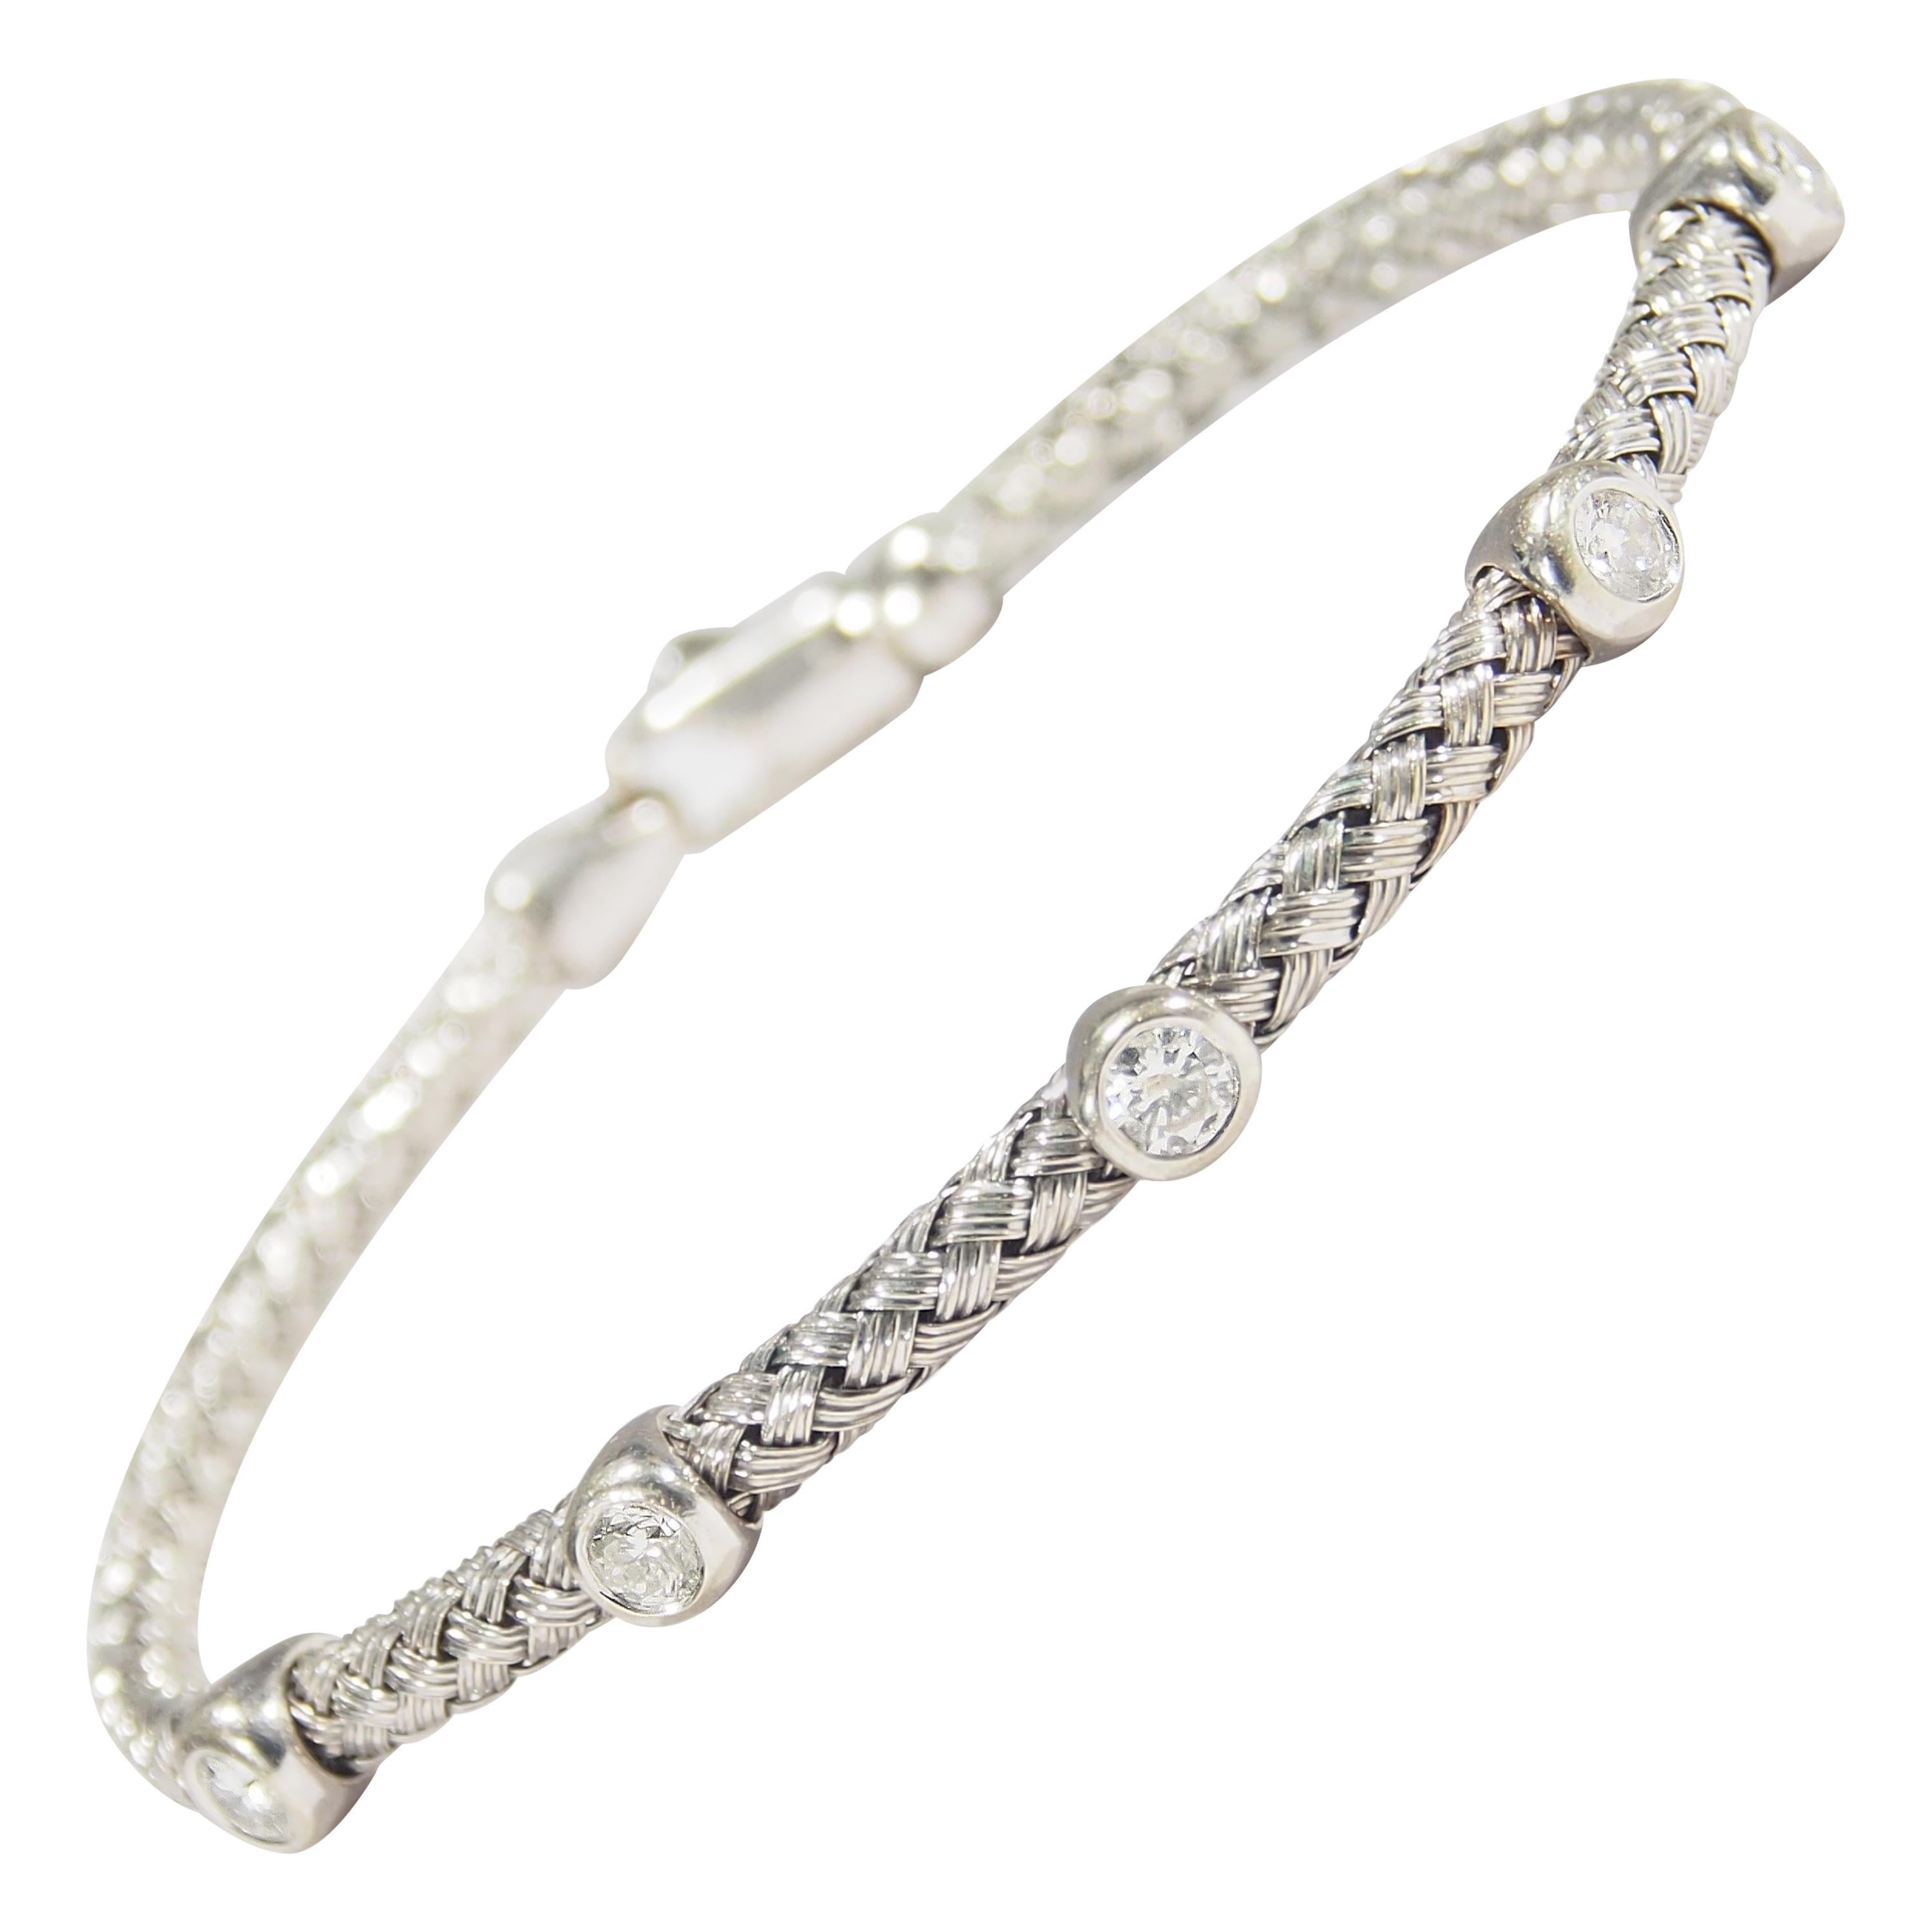 14 Karat Diamond Bracelet Rope Motif White Gold 0.75 Carat